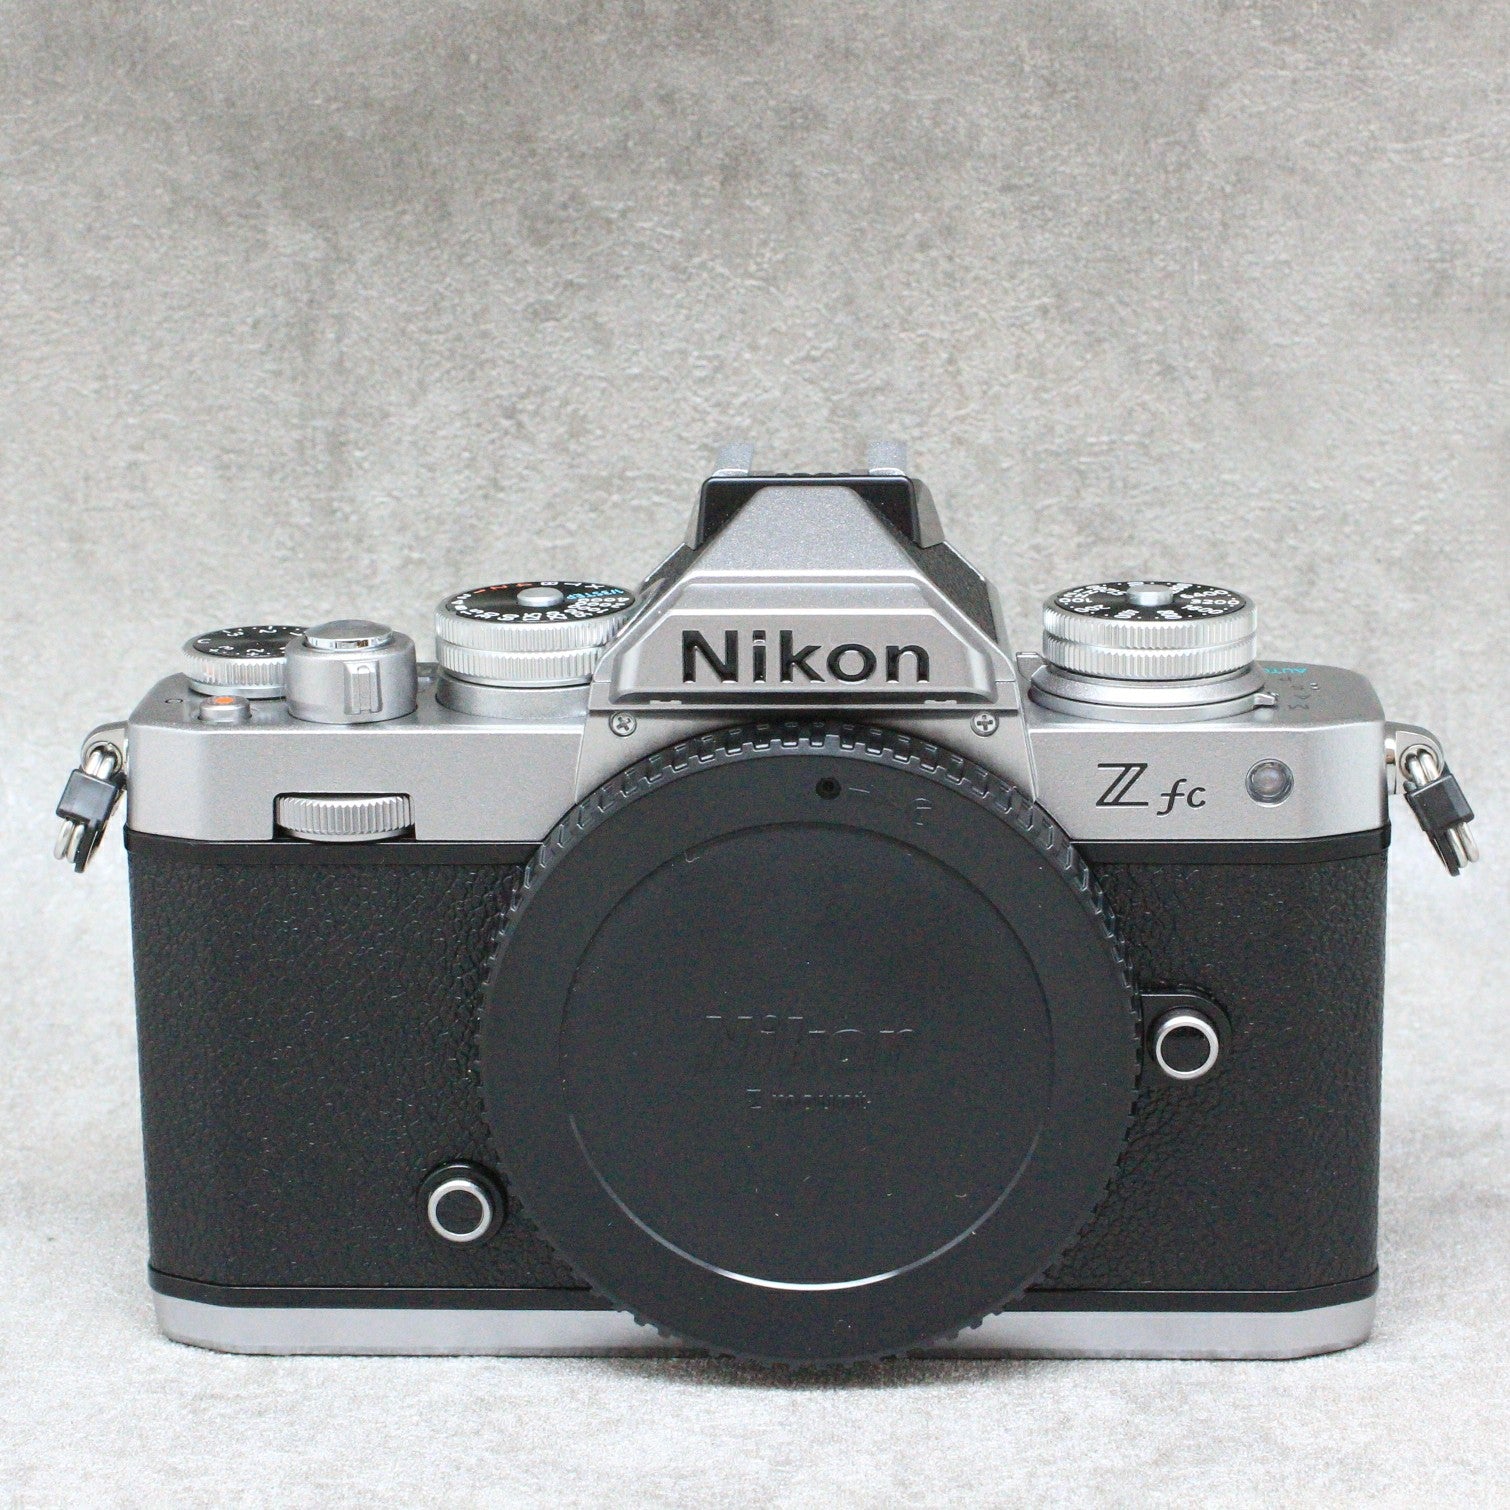 中古品 Nikon Zfc ボディ – サトカメオンラインショップ